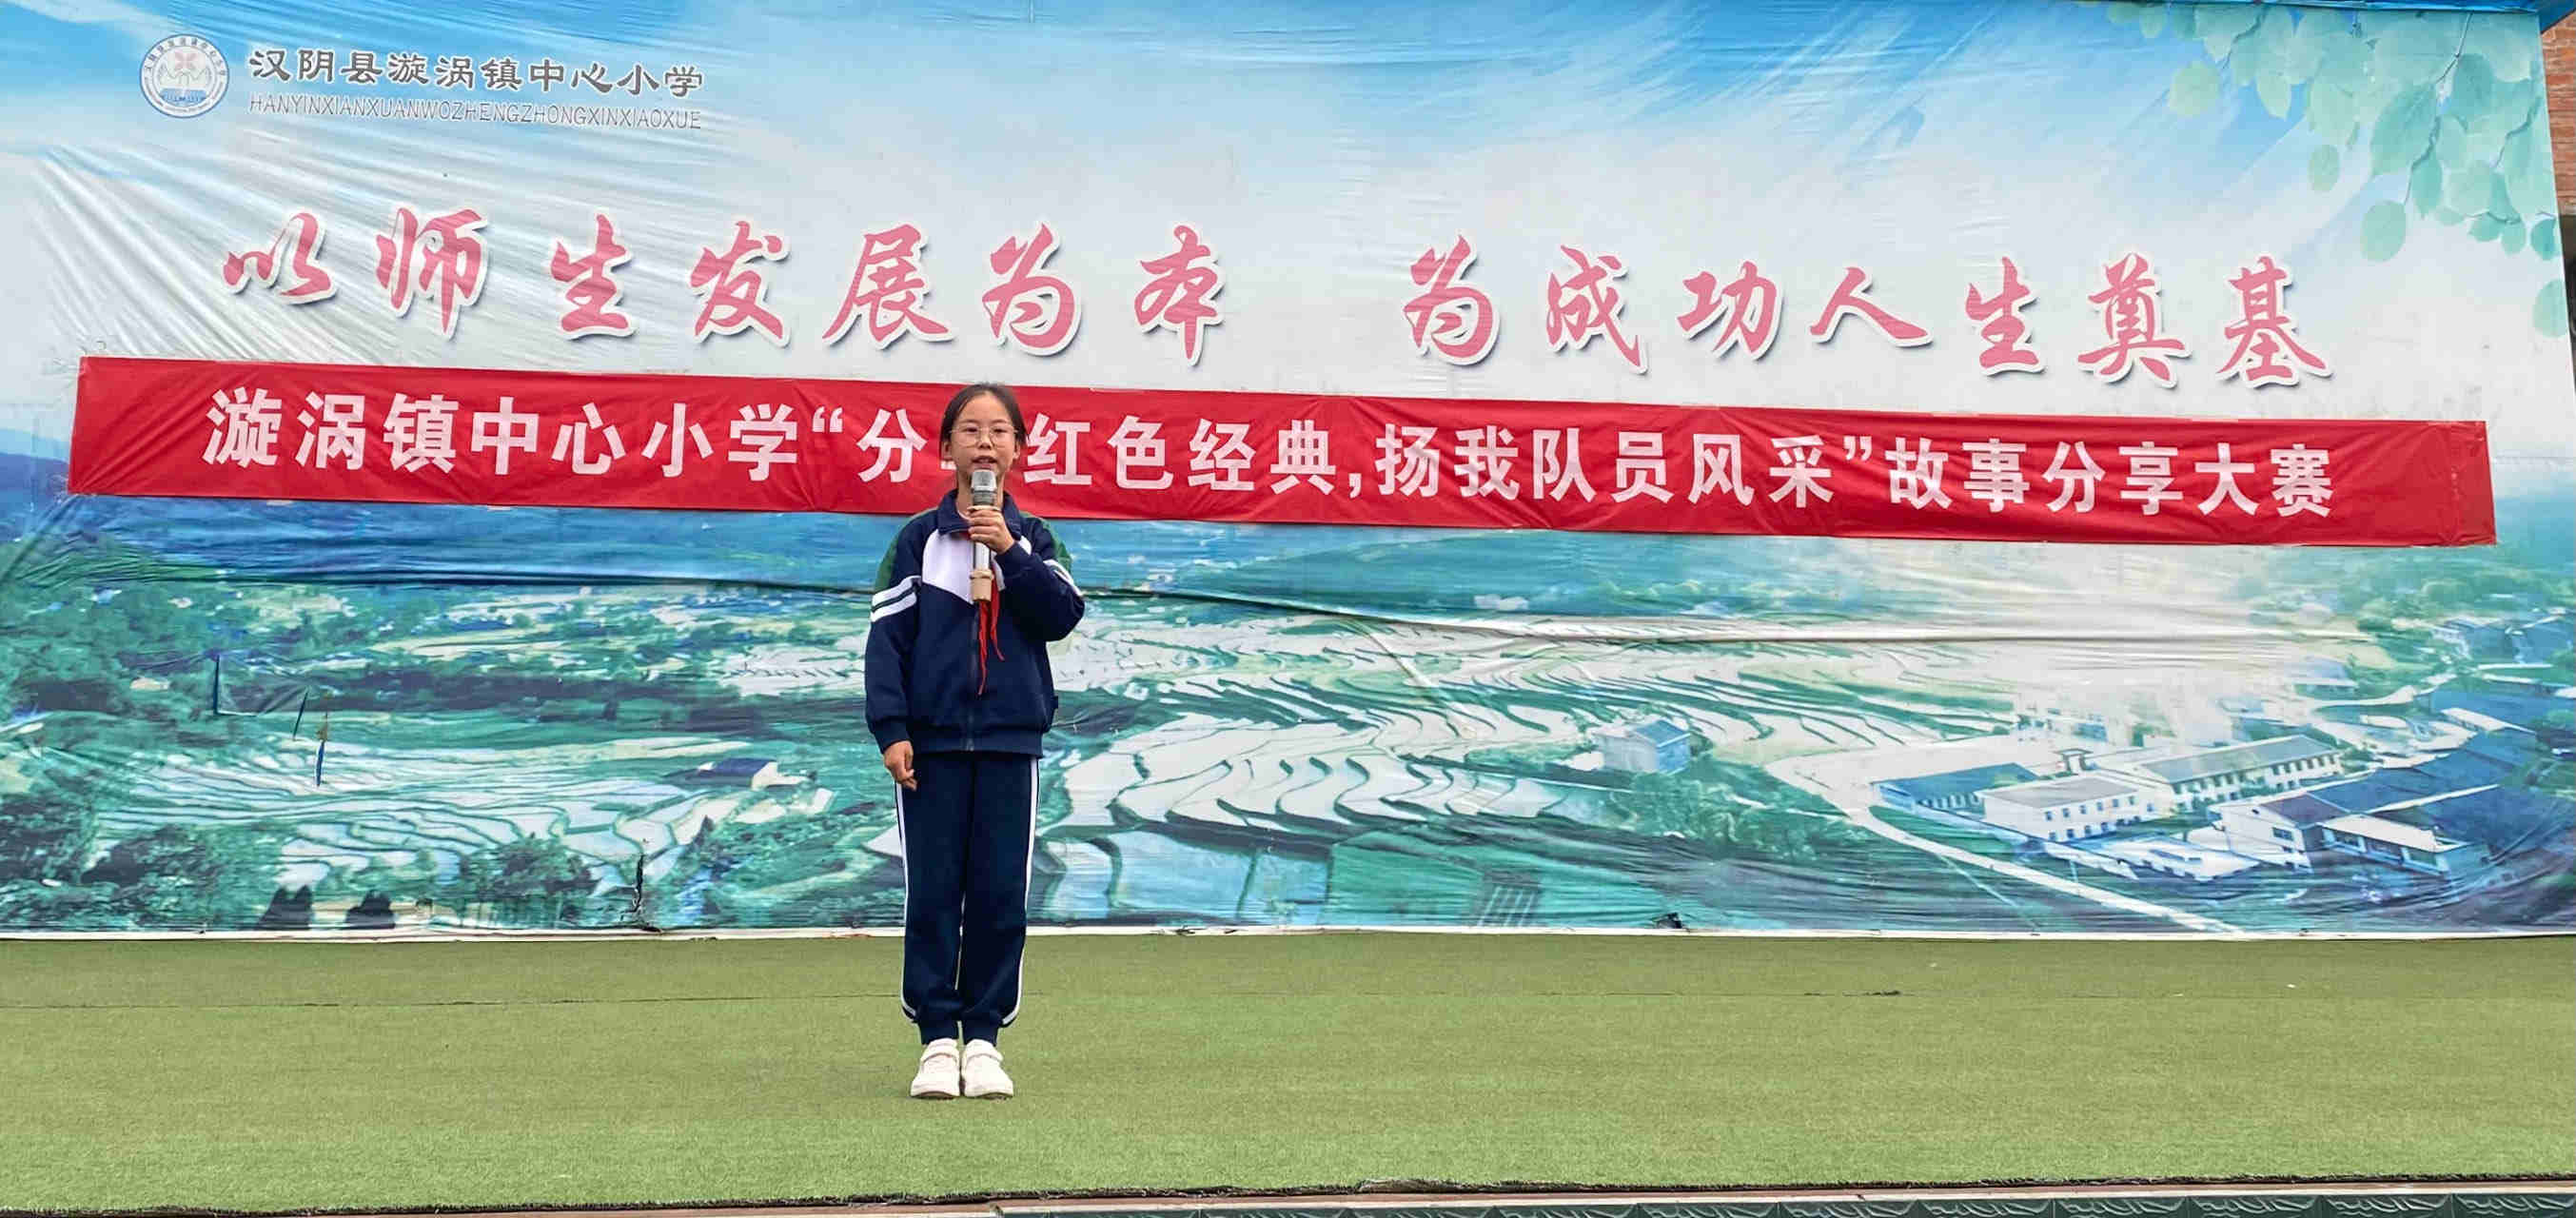 汉阴县漩涡镇中心小学举行红色故事分享活动